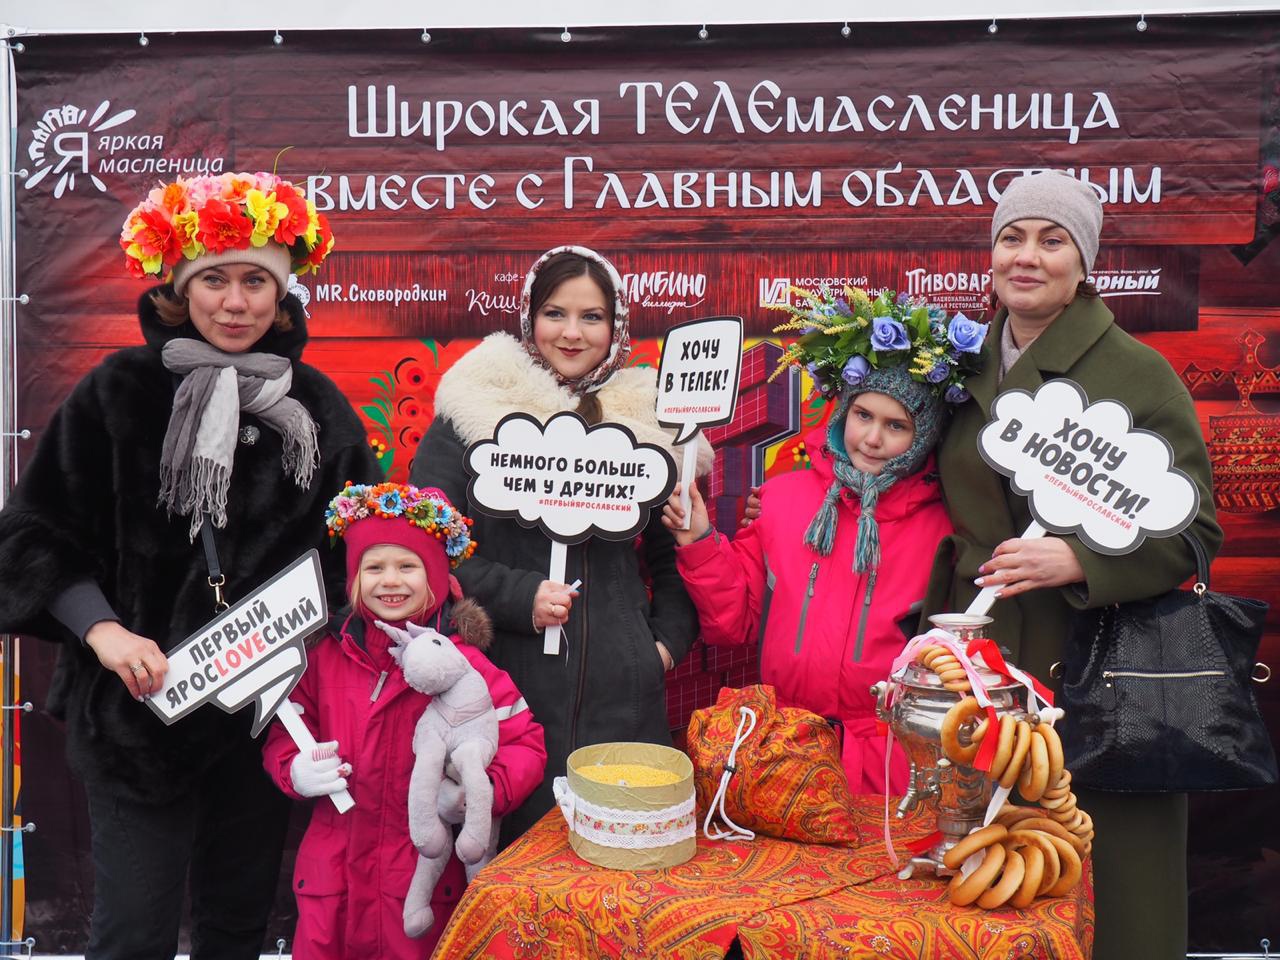 В Ярославле назвали дату празднования Масленицы 2022 и открыли конкурс масленичных кукол